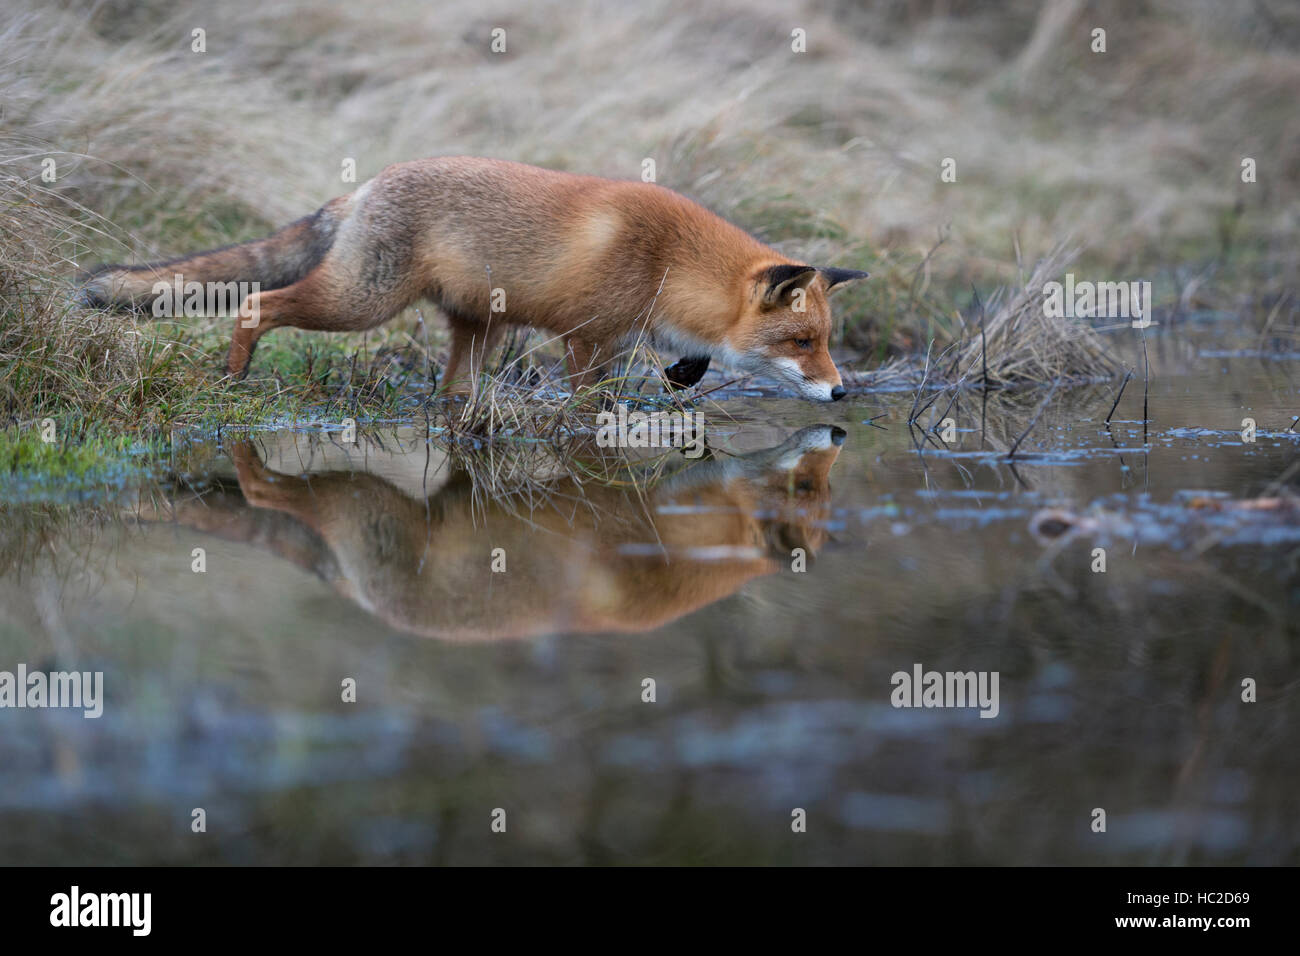 Red Fox (Vulpes vulpes ) la chasse à un plan d'eau, en pose typique, la mise en miroir, concentré sur la surface de l'eau était claire. Banque D'Images